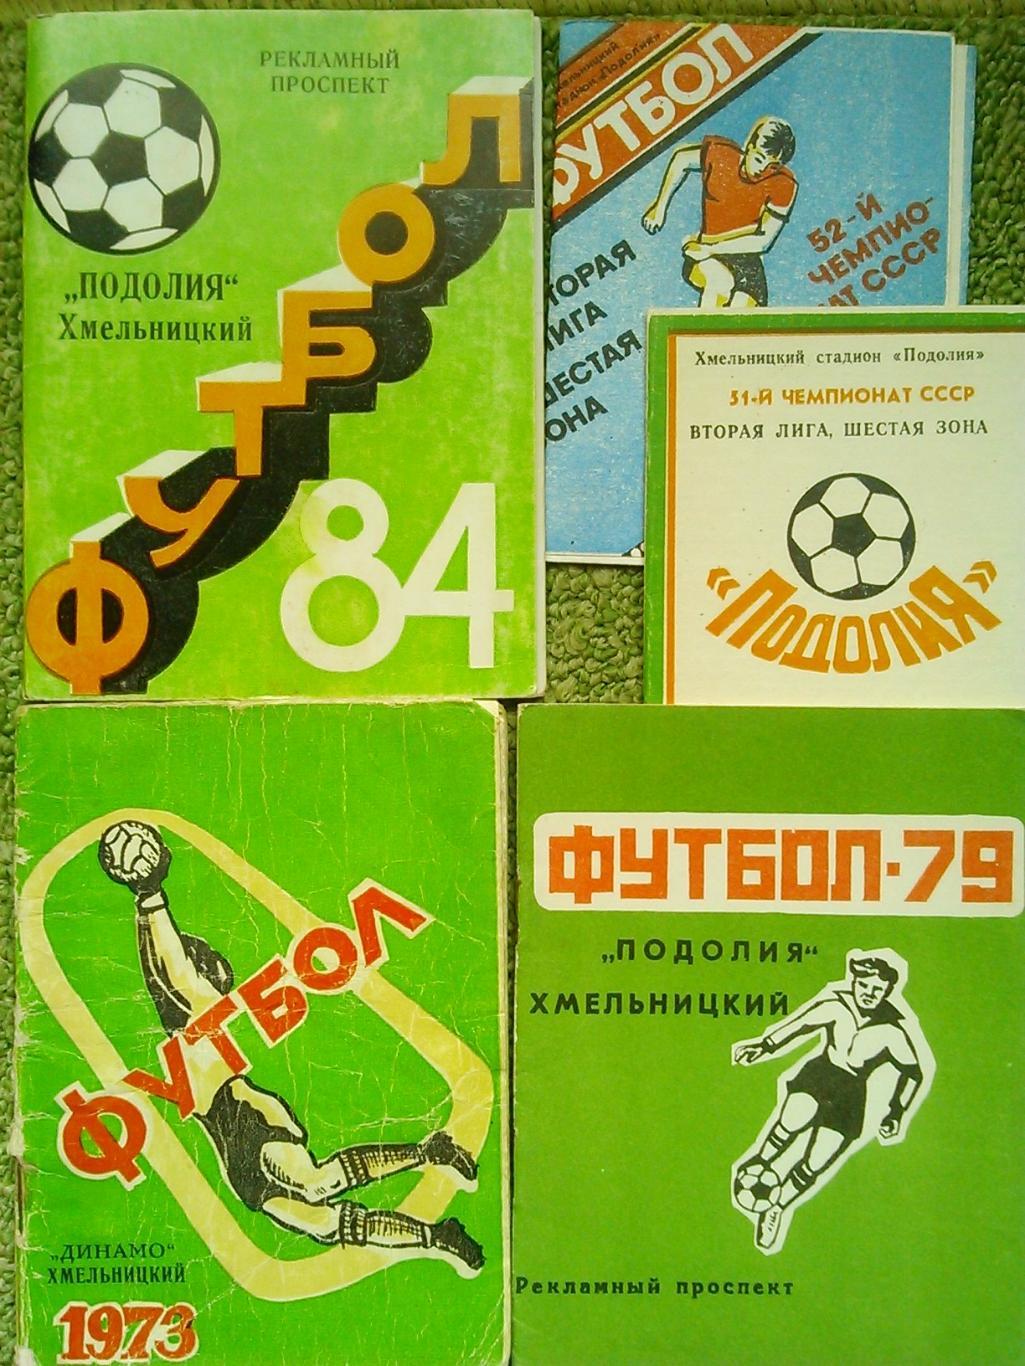 ФУТБОЛ-1973 Динамо Хмельницкий. календарь-справочник. Оптом скидки до 45%!